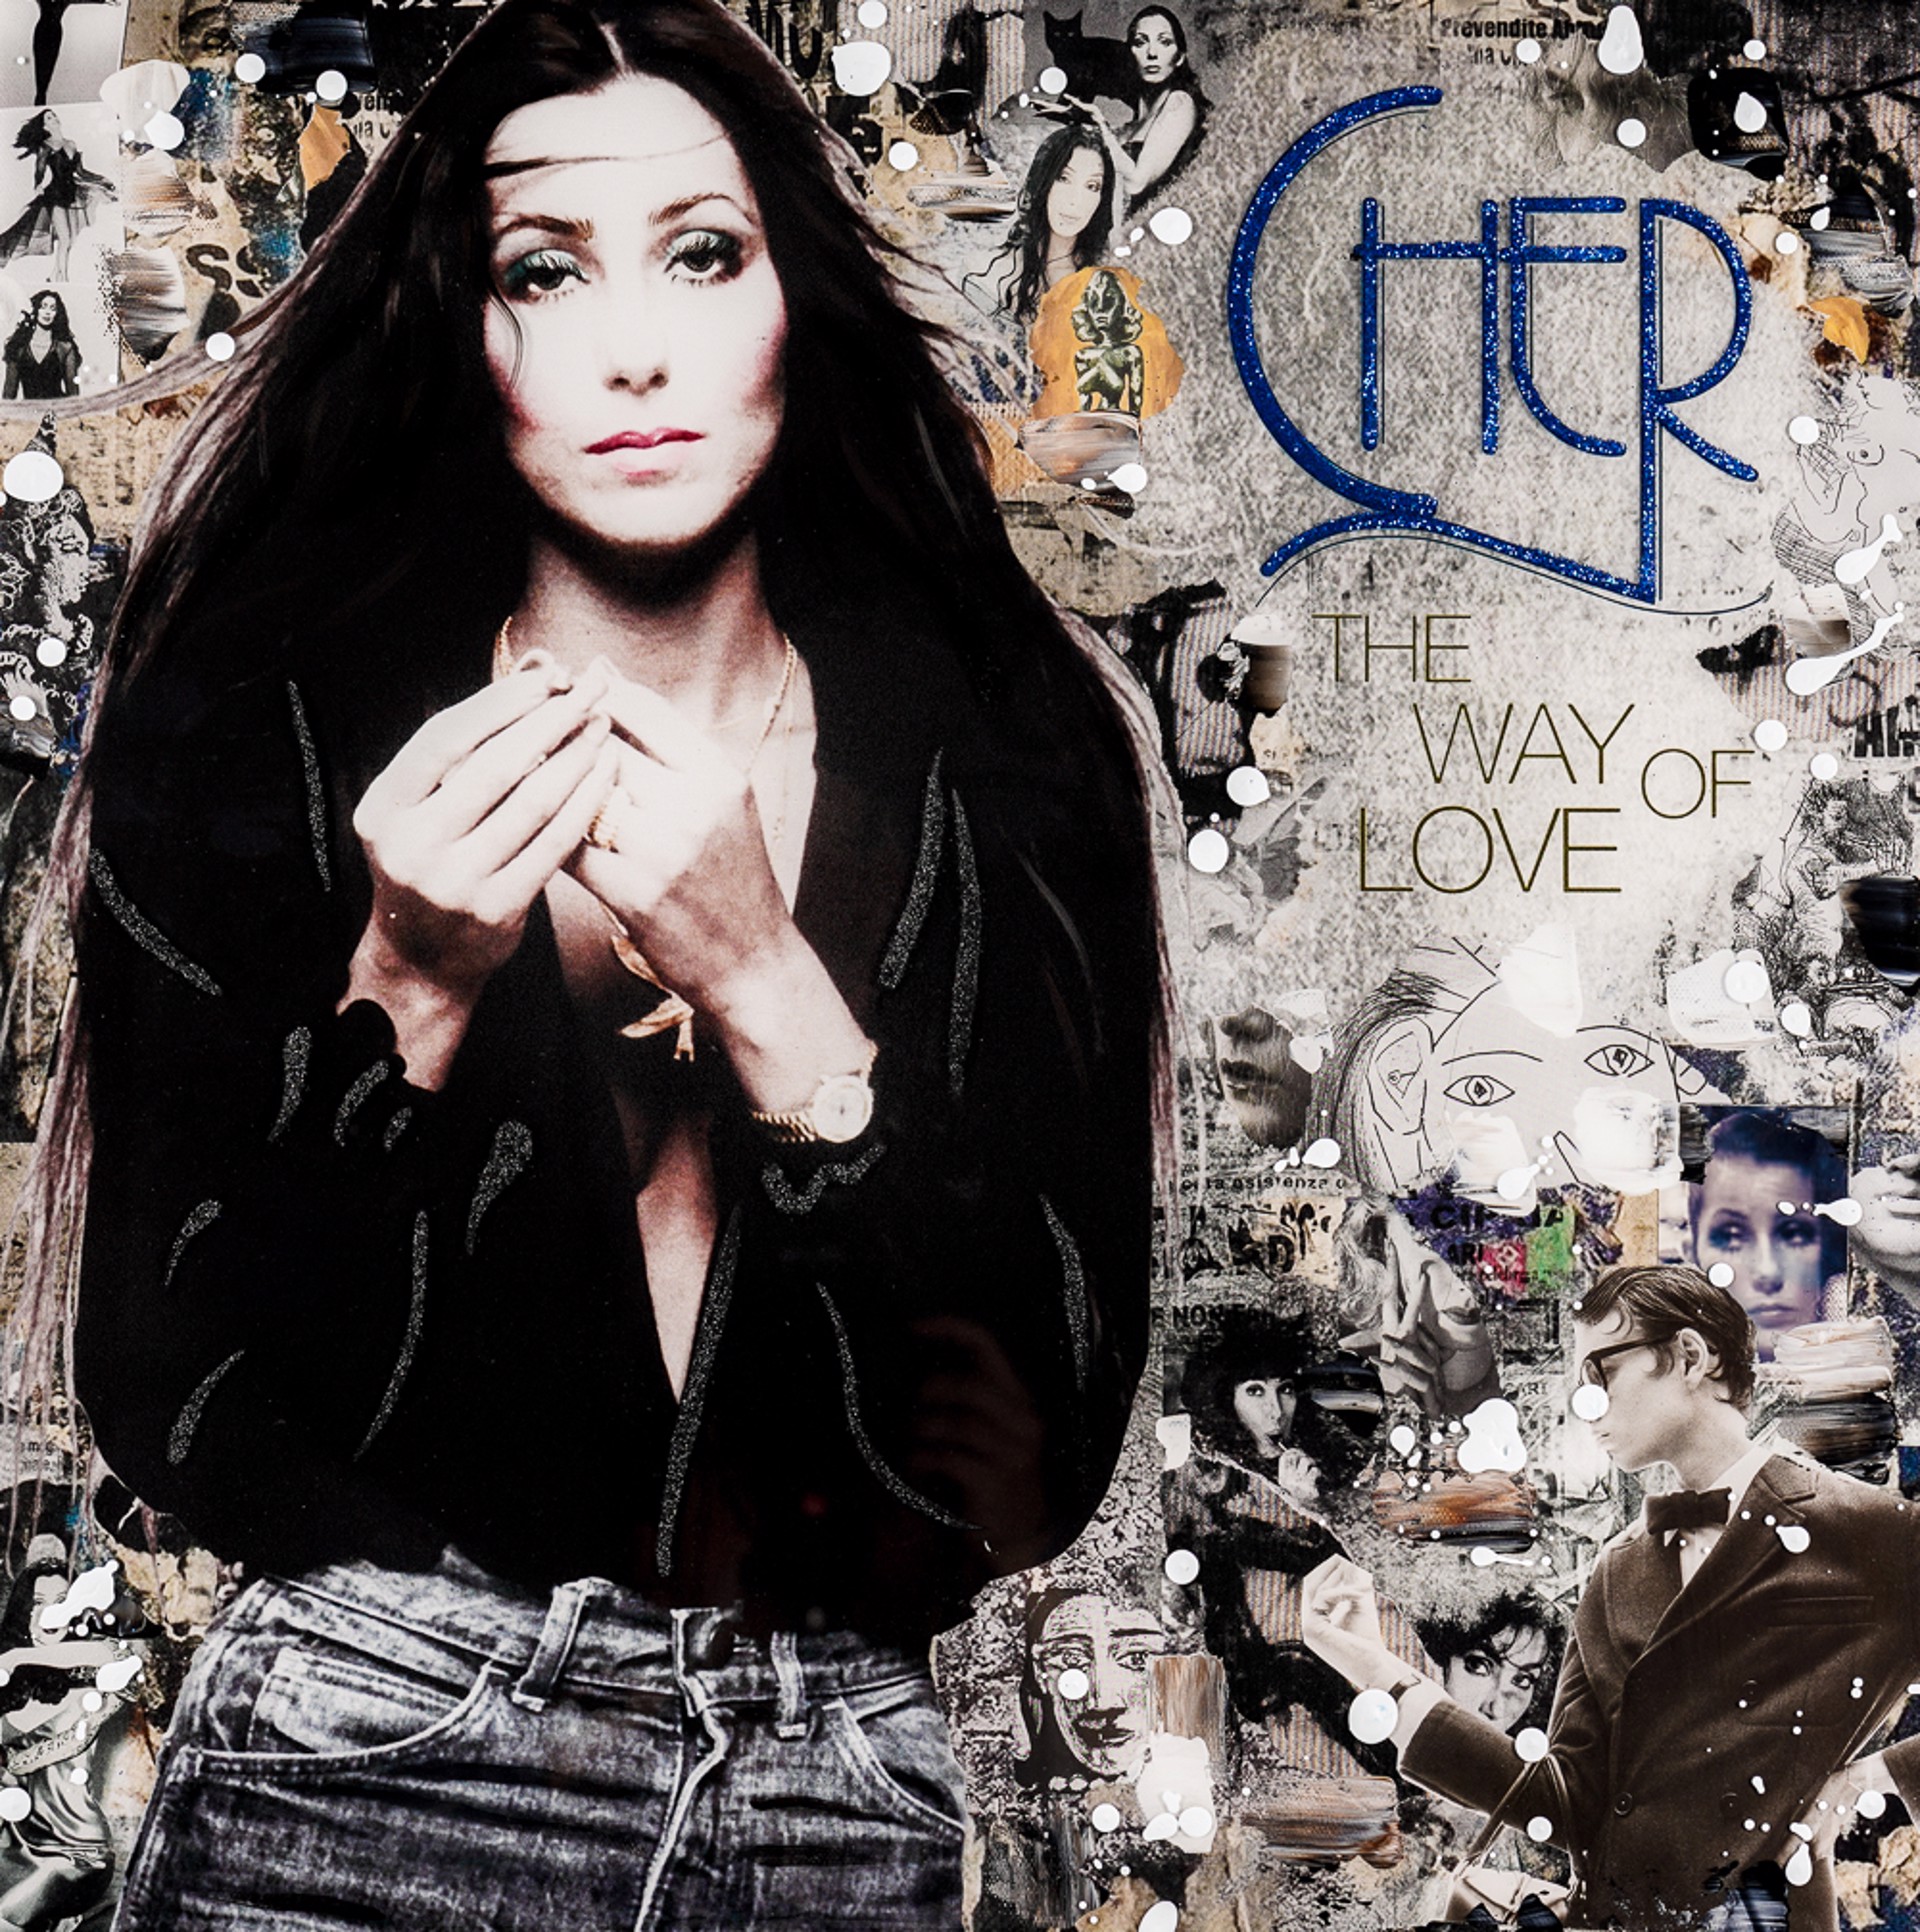 Cher "The Way of Love" by De Von